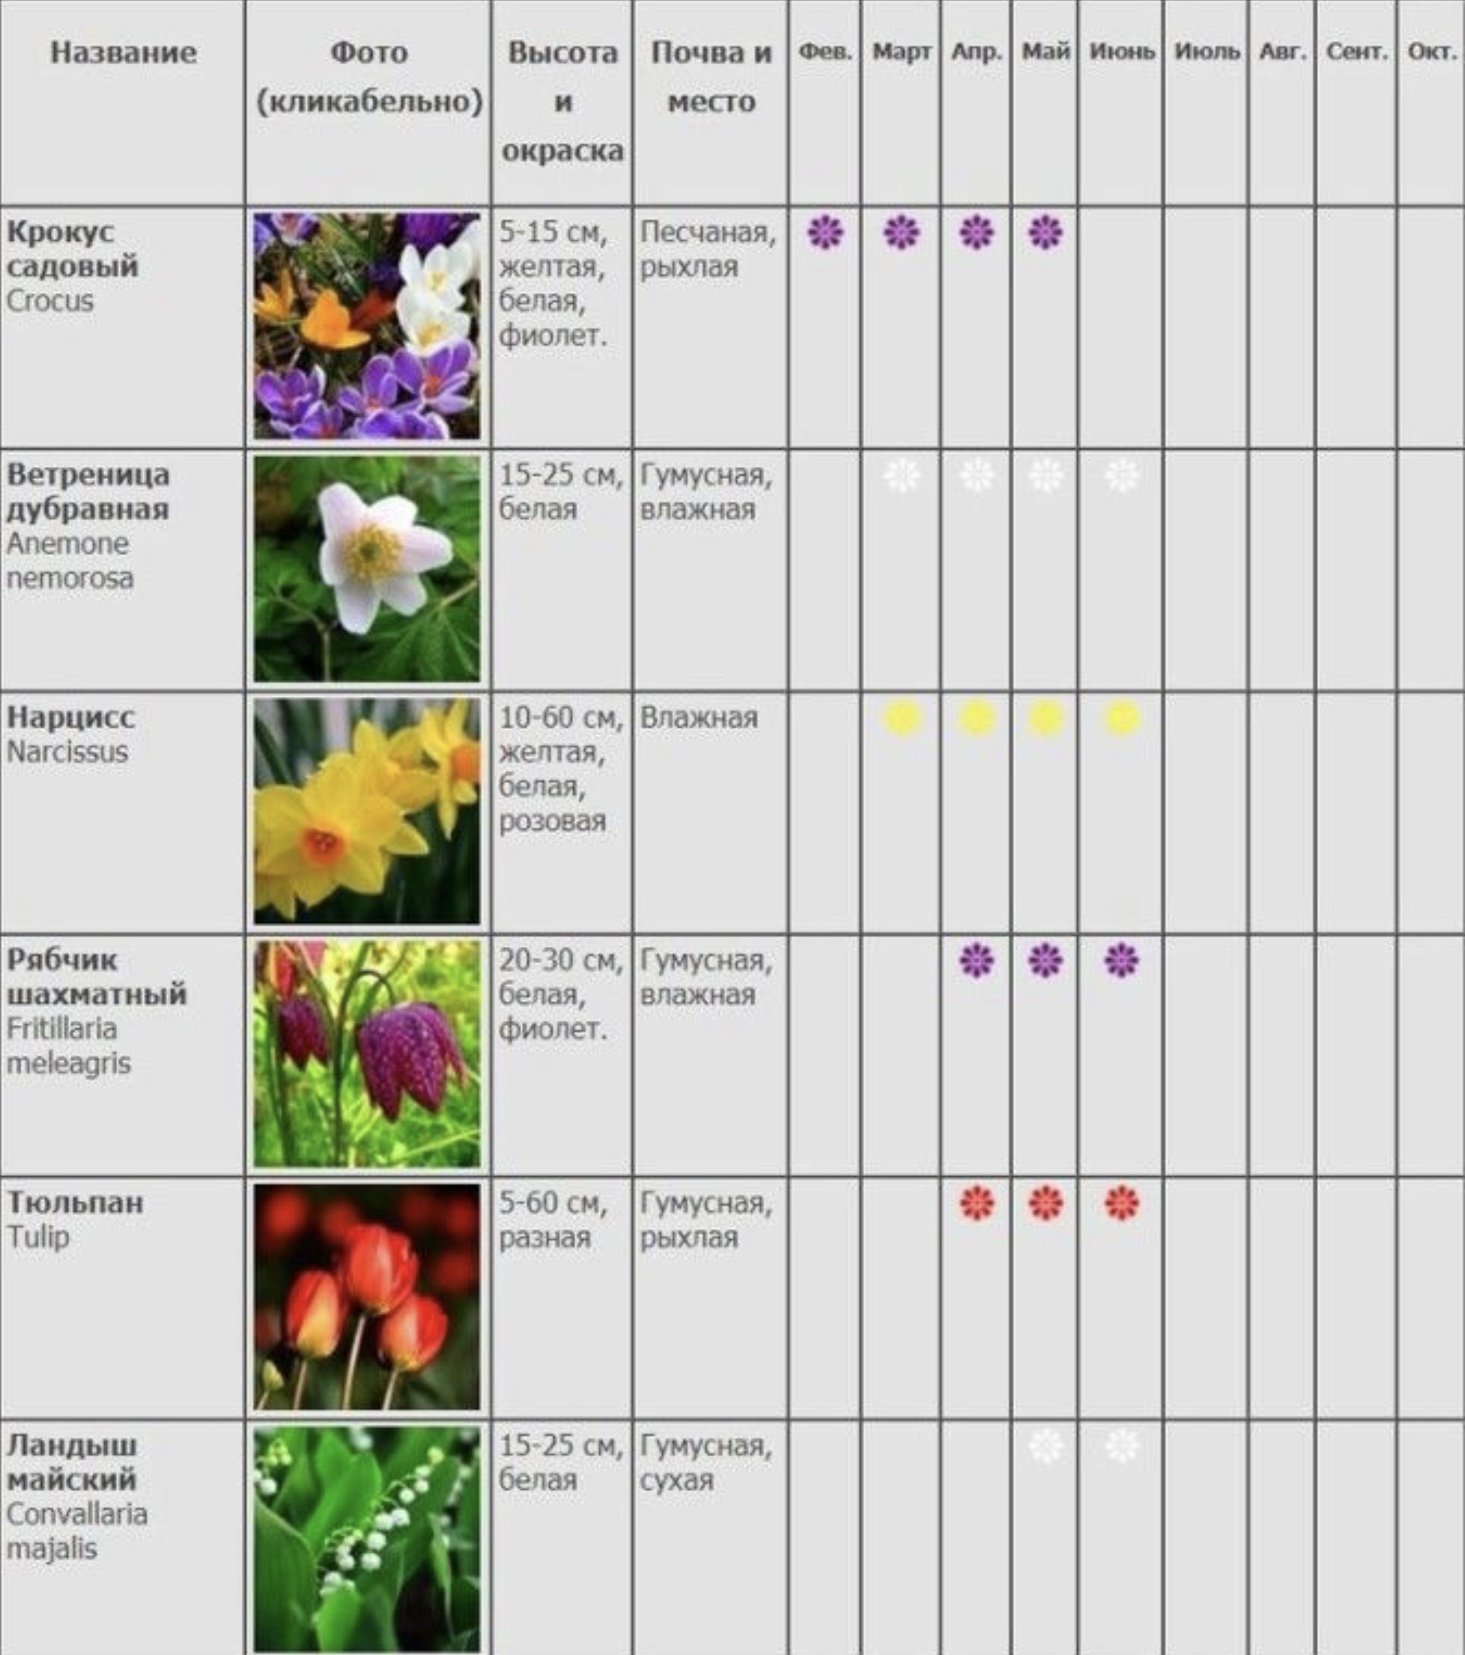 Какие семена посадить в мае. Сроки цветения лилейников таблица. Таблица сроков цветения многолетников. Сроки цветения многолетников. Сроки цветения многолетников для клумб таблица.